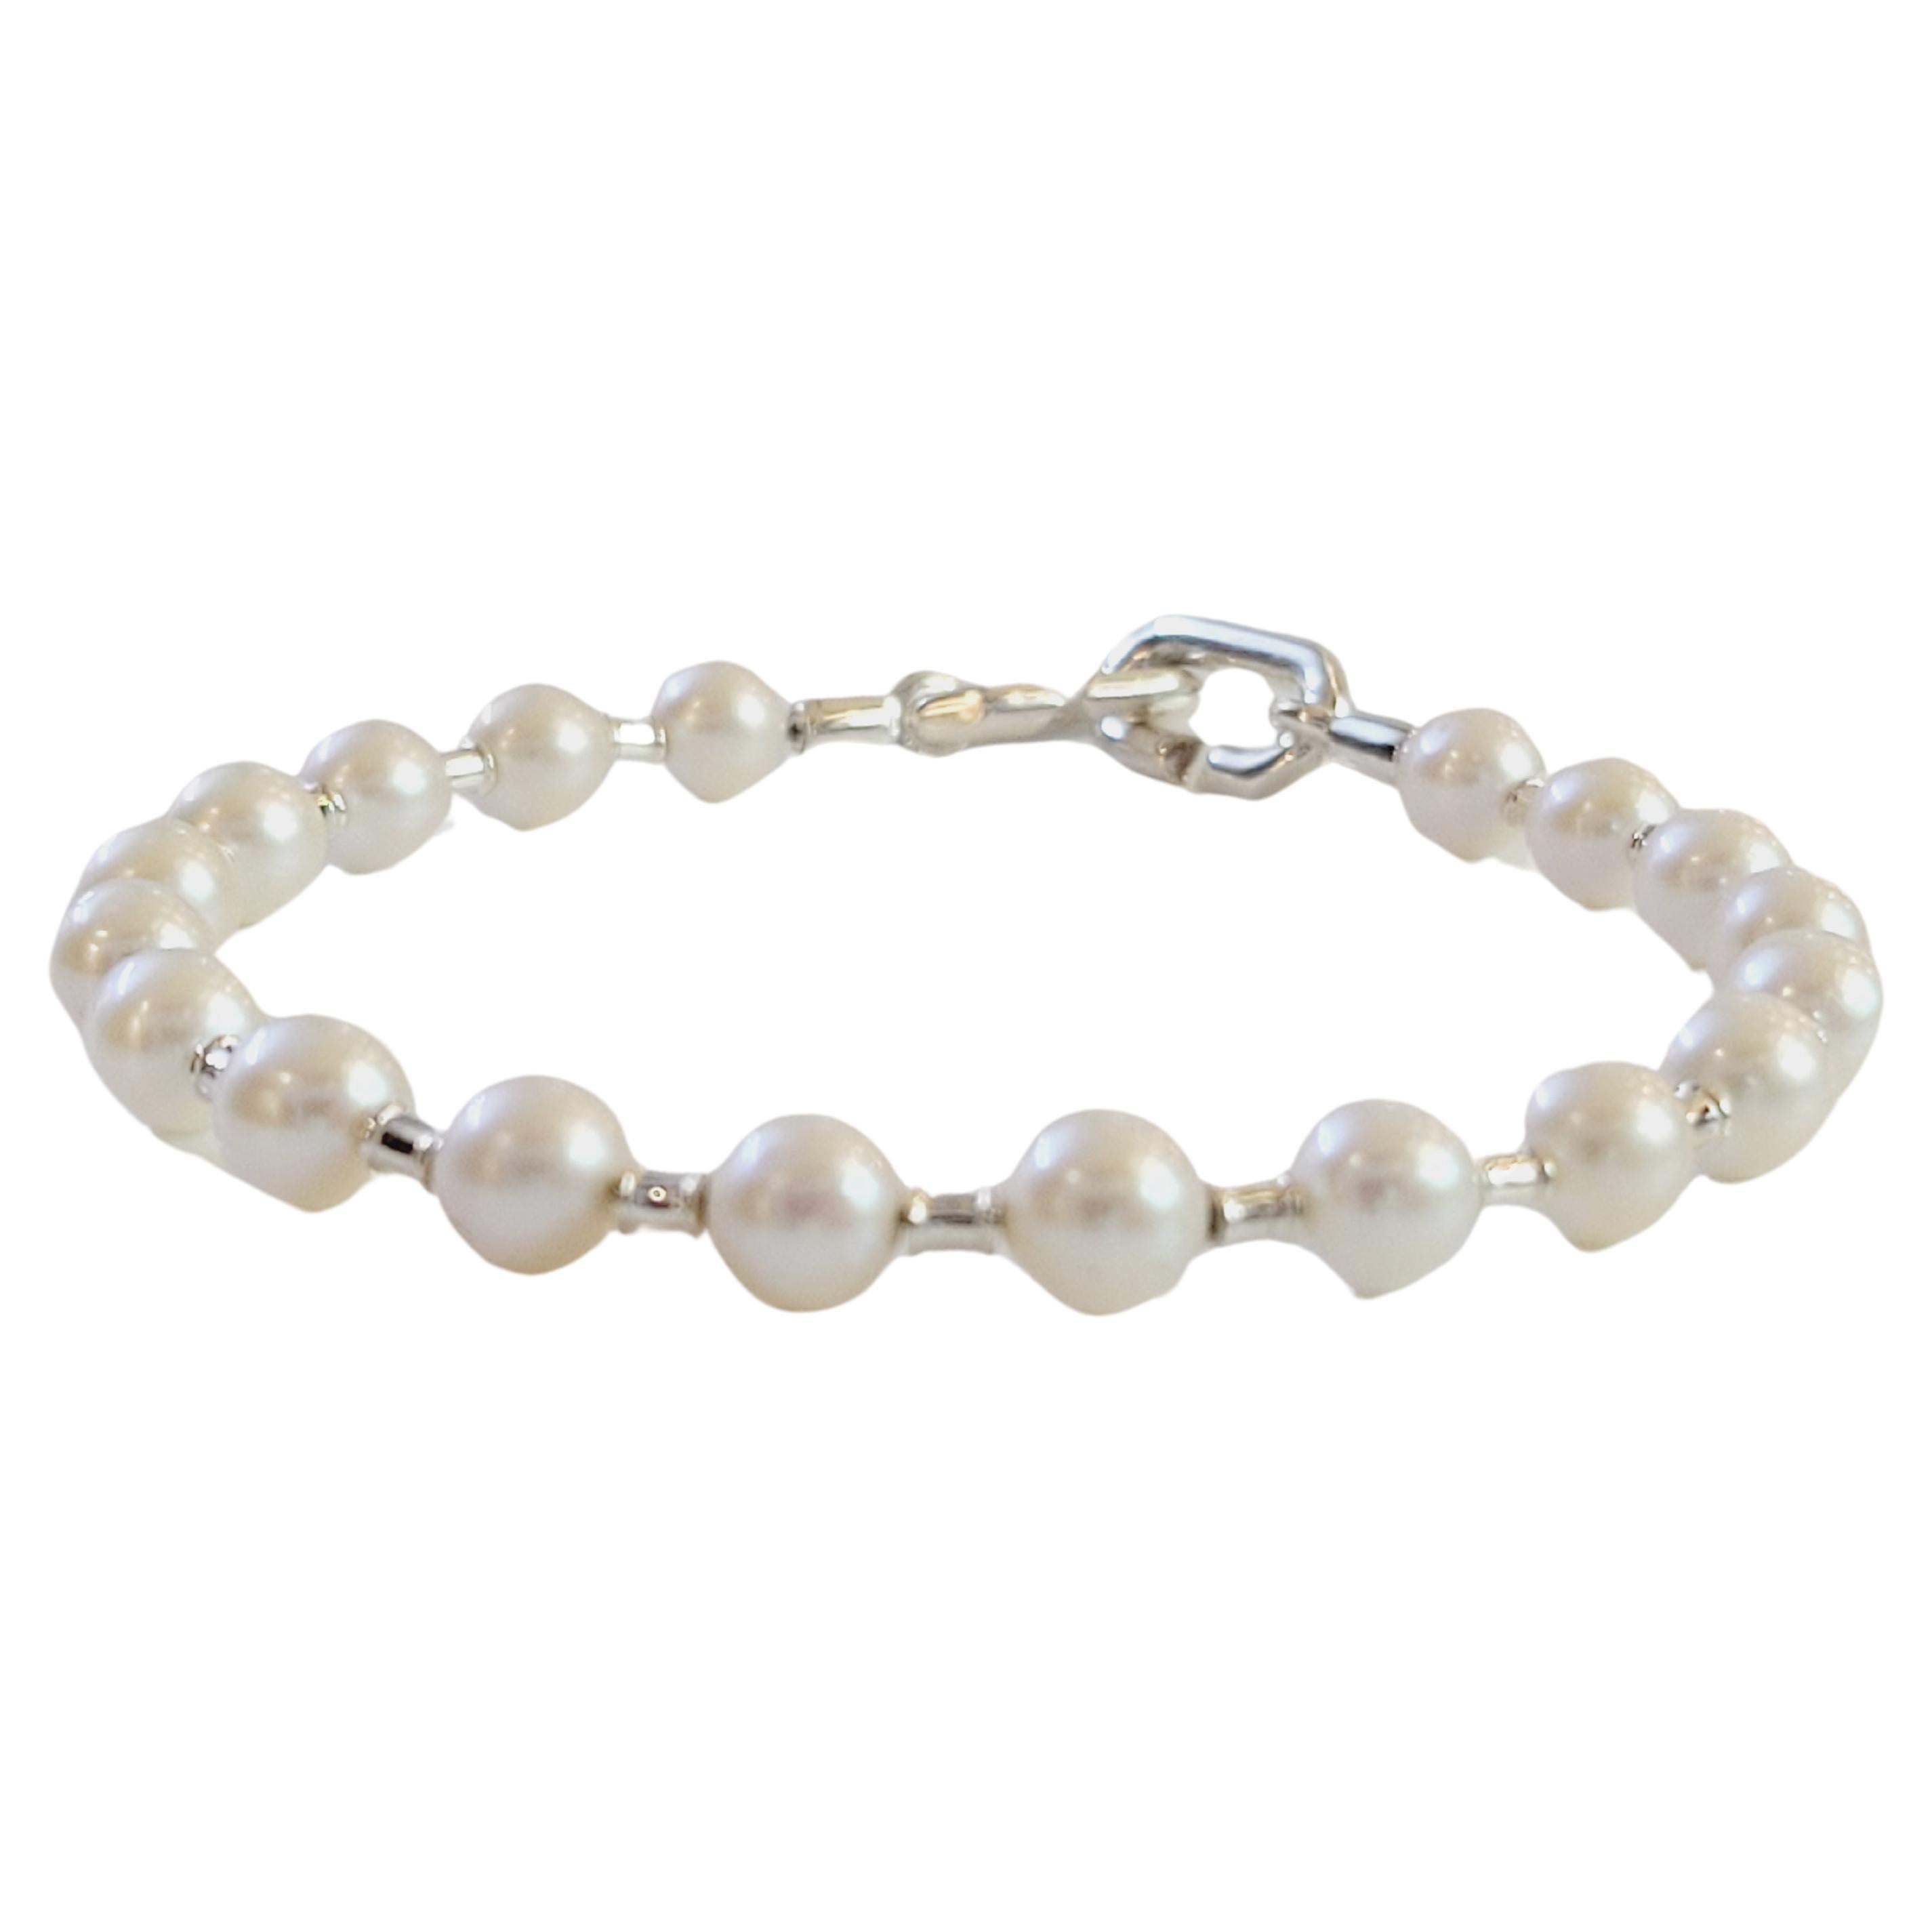 Tiffany Hard Wear Pearl Bracelet in Silver, 5-6 mm